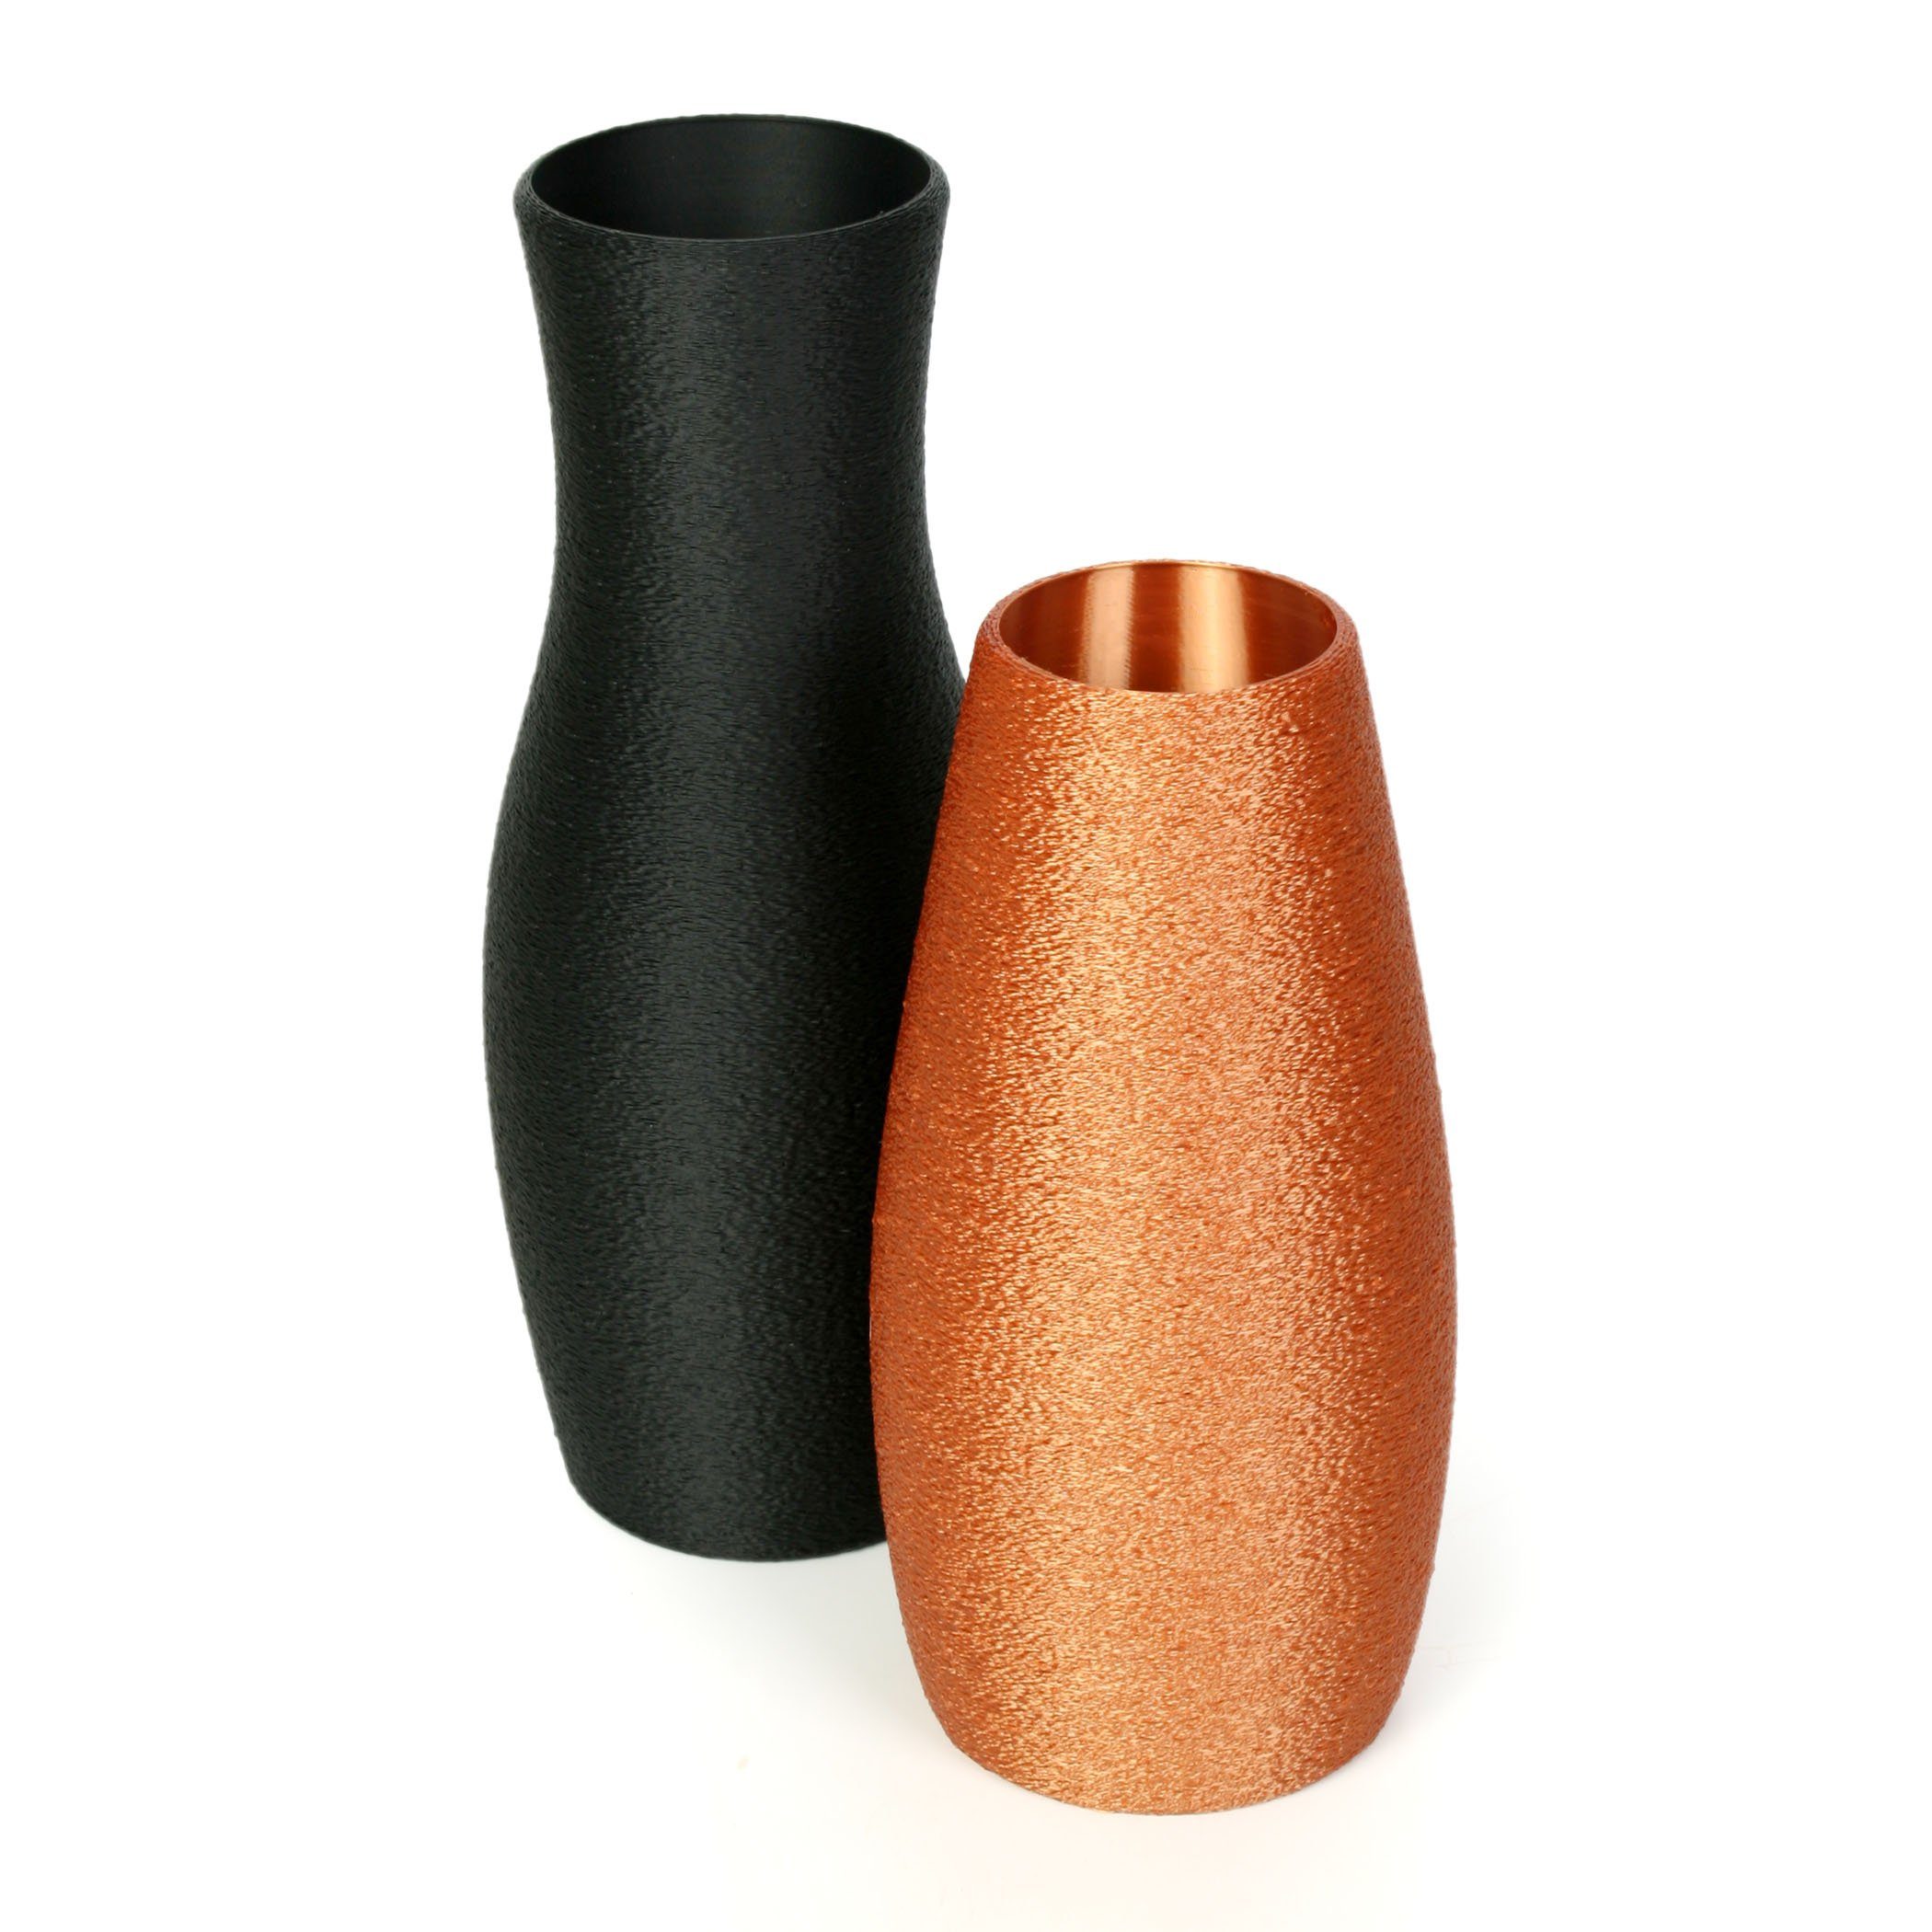 Kreative Feder Dekovase Designer Vasen-Set – Dekorative Blumenvasen aus Bio-Kunststoff (Set, Set bestehend aus 2 Vasen), aus nachwachsenden Rohstoffen; wasserdicht & bruchsicher Schwarz & Bronze | Dekovasen